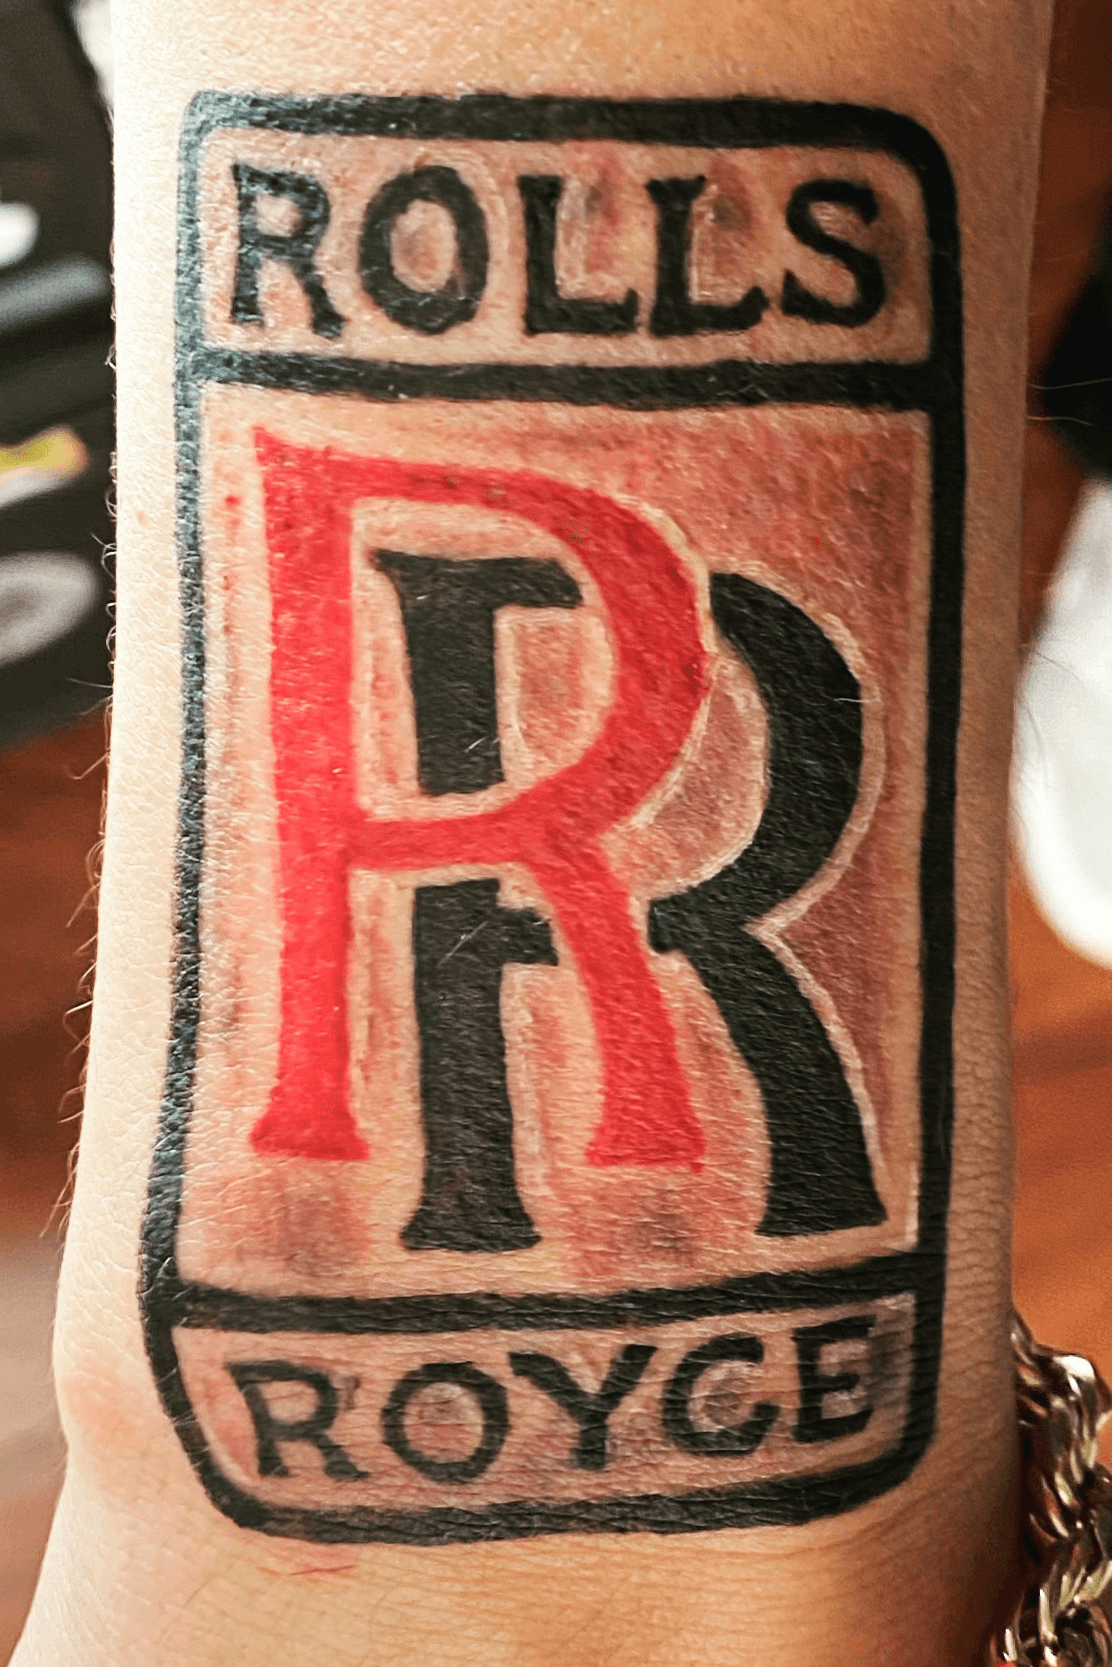 roger tattoo  tattoo tattoos tattoostyle rollsroyce rollsroycefan  tatuaggio tattooart tattooartist fashion style model ink  rogertattoo rogertattoostudio  Facebook